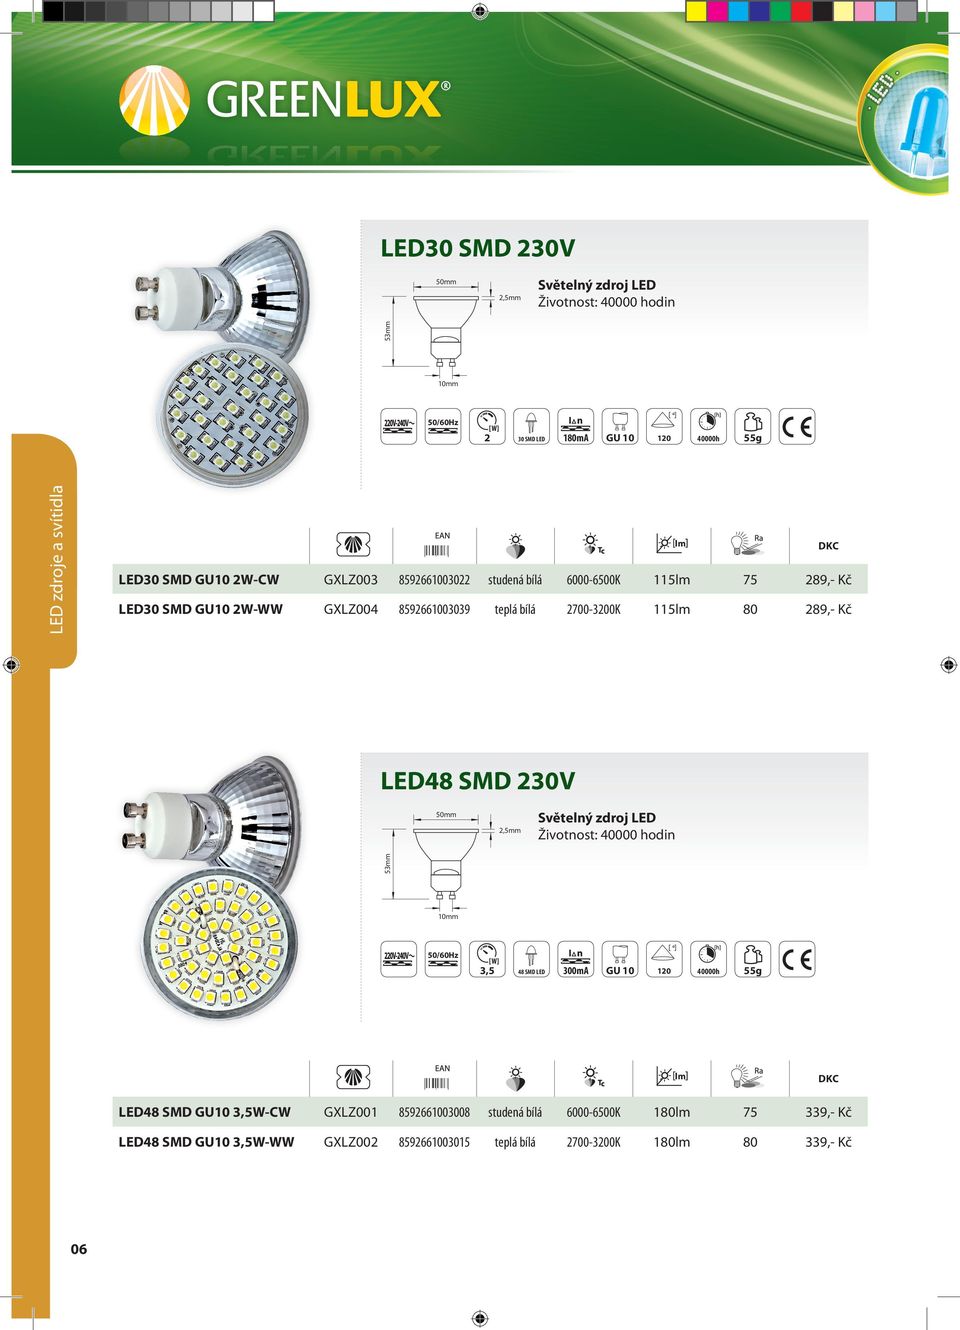 LED48 SMD 230V Životnost: 40000 hodin 53mm 2,5mm 10mm 3,5 48 SMD LED 300mA GU 10 40000h 55g 06 LED48 SMD GU10 3,5W-CW